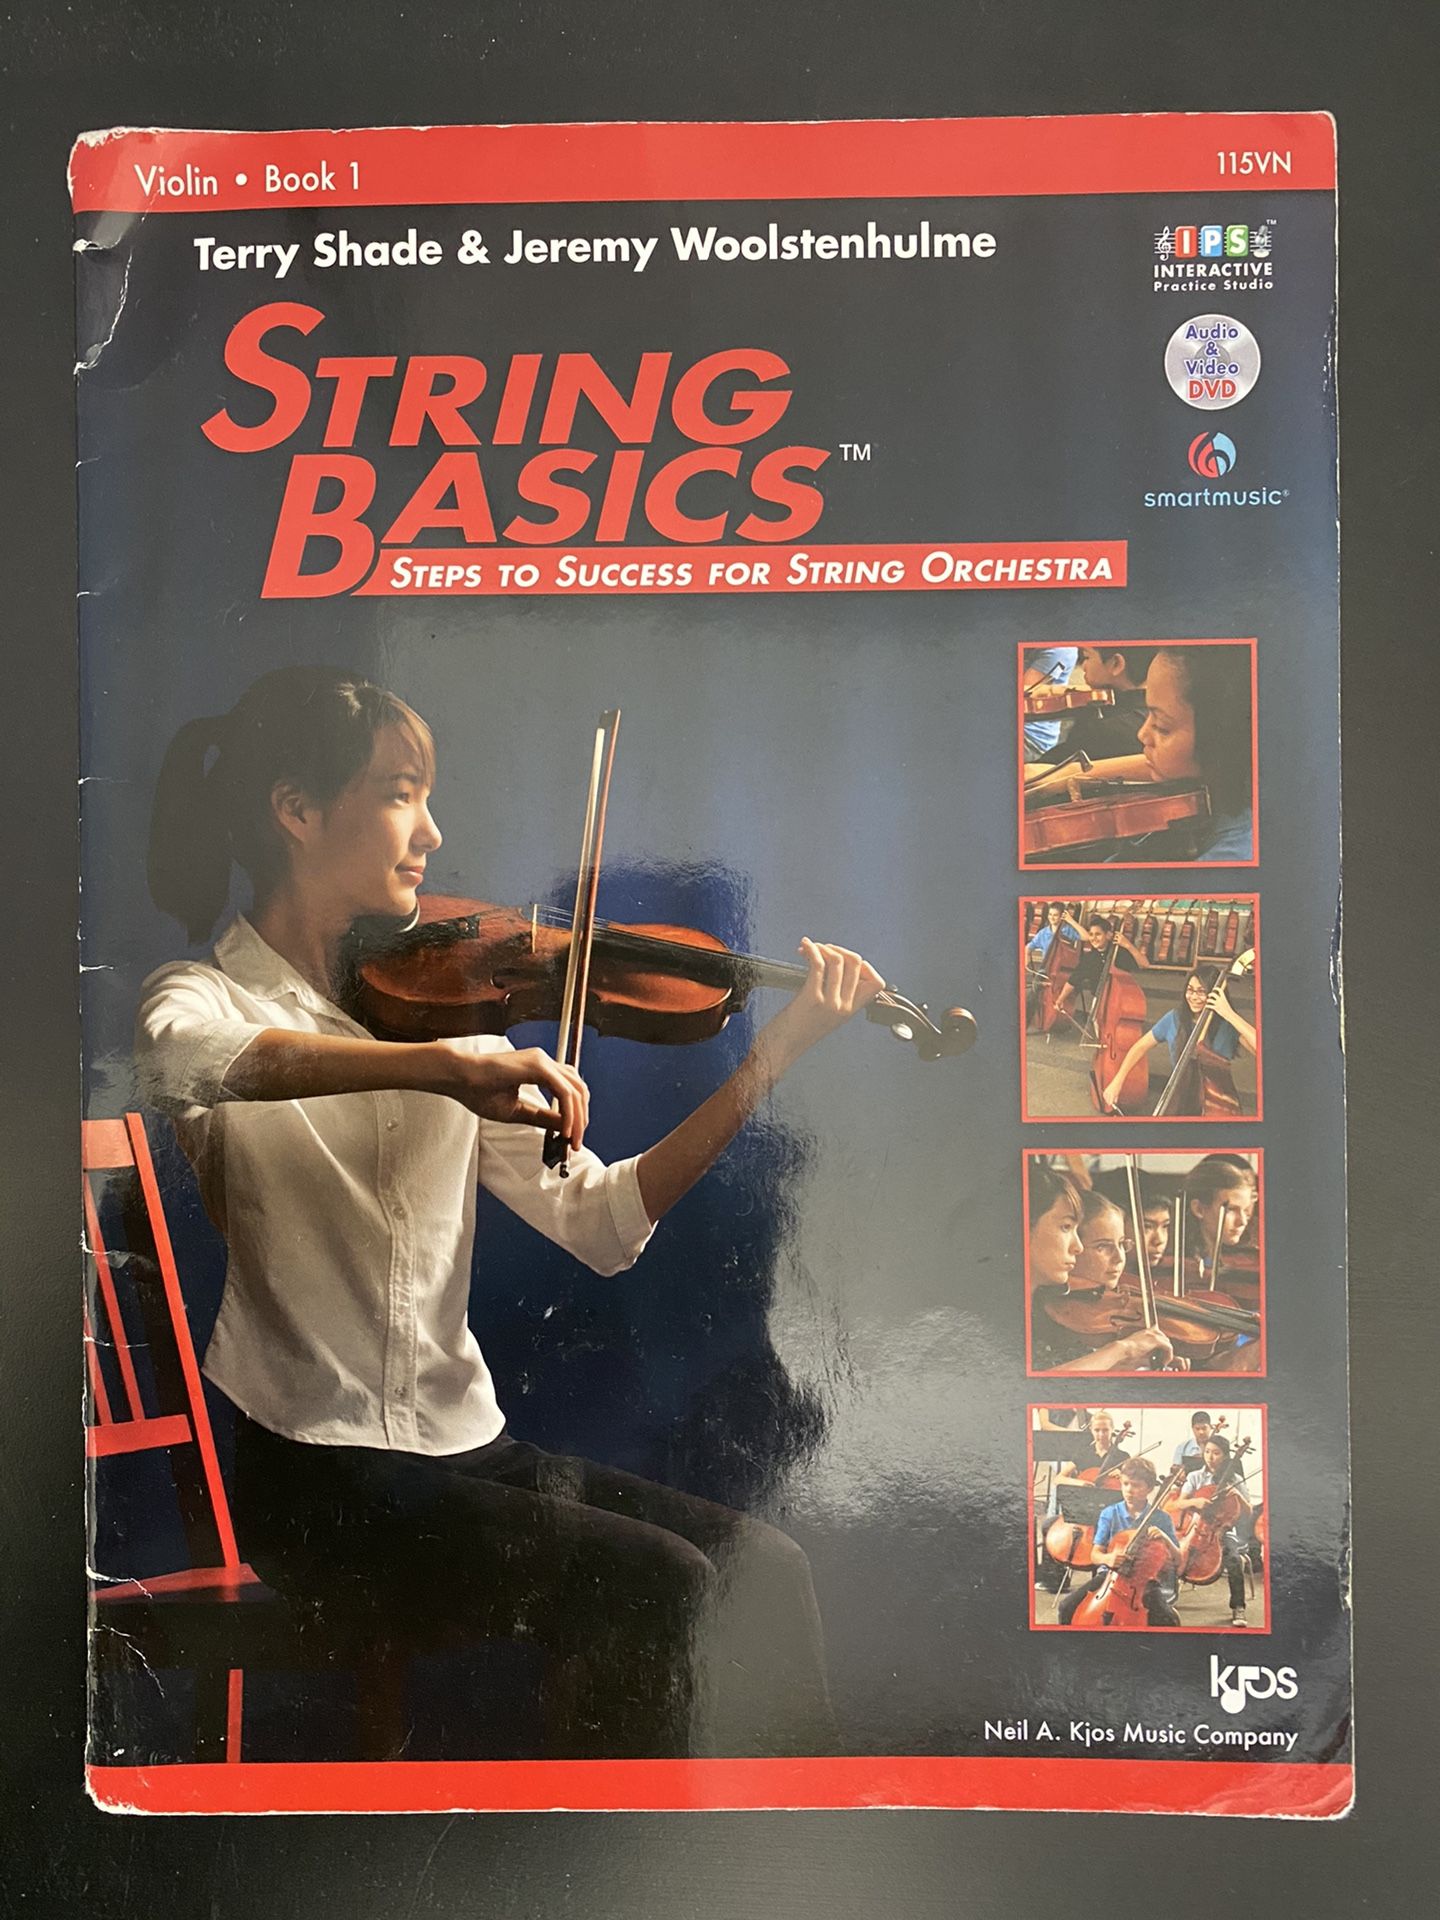 Basic strings music book